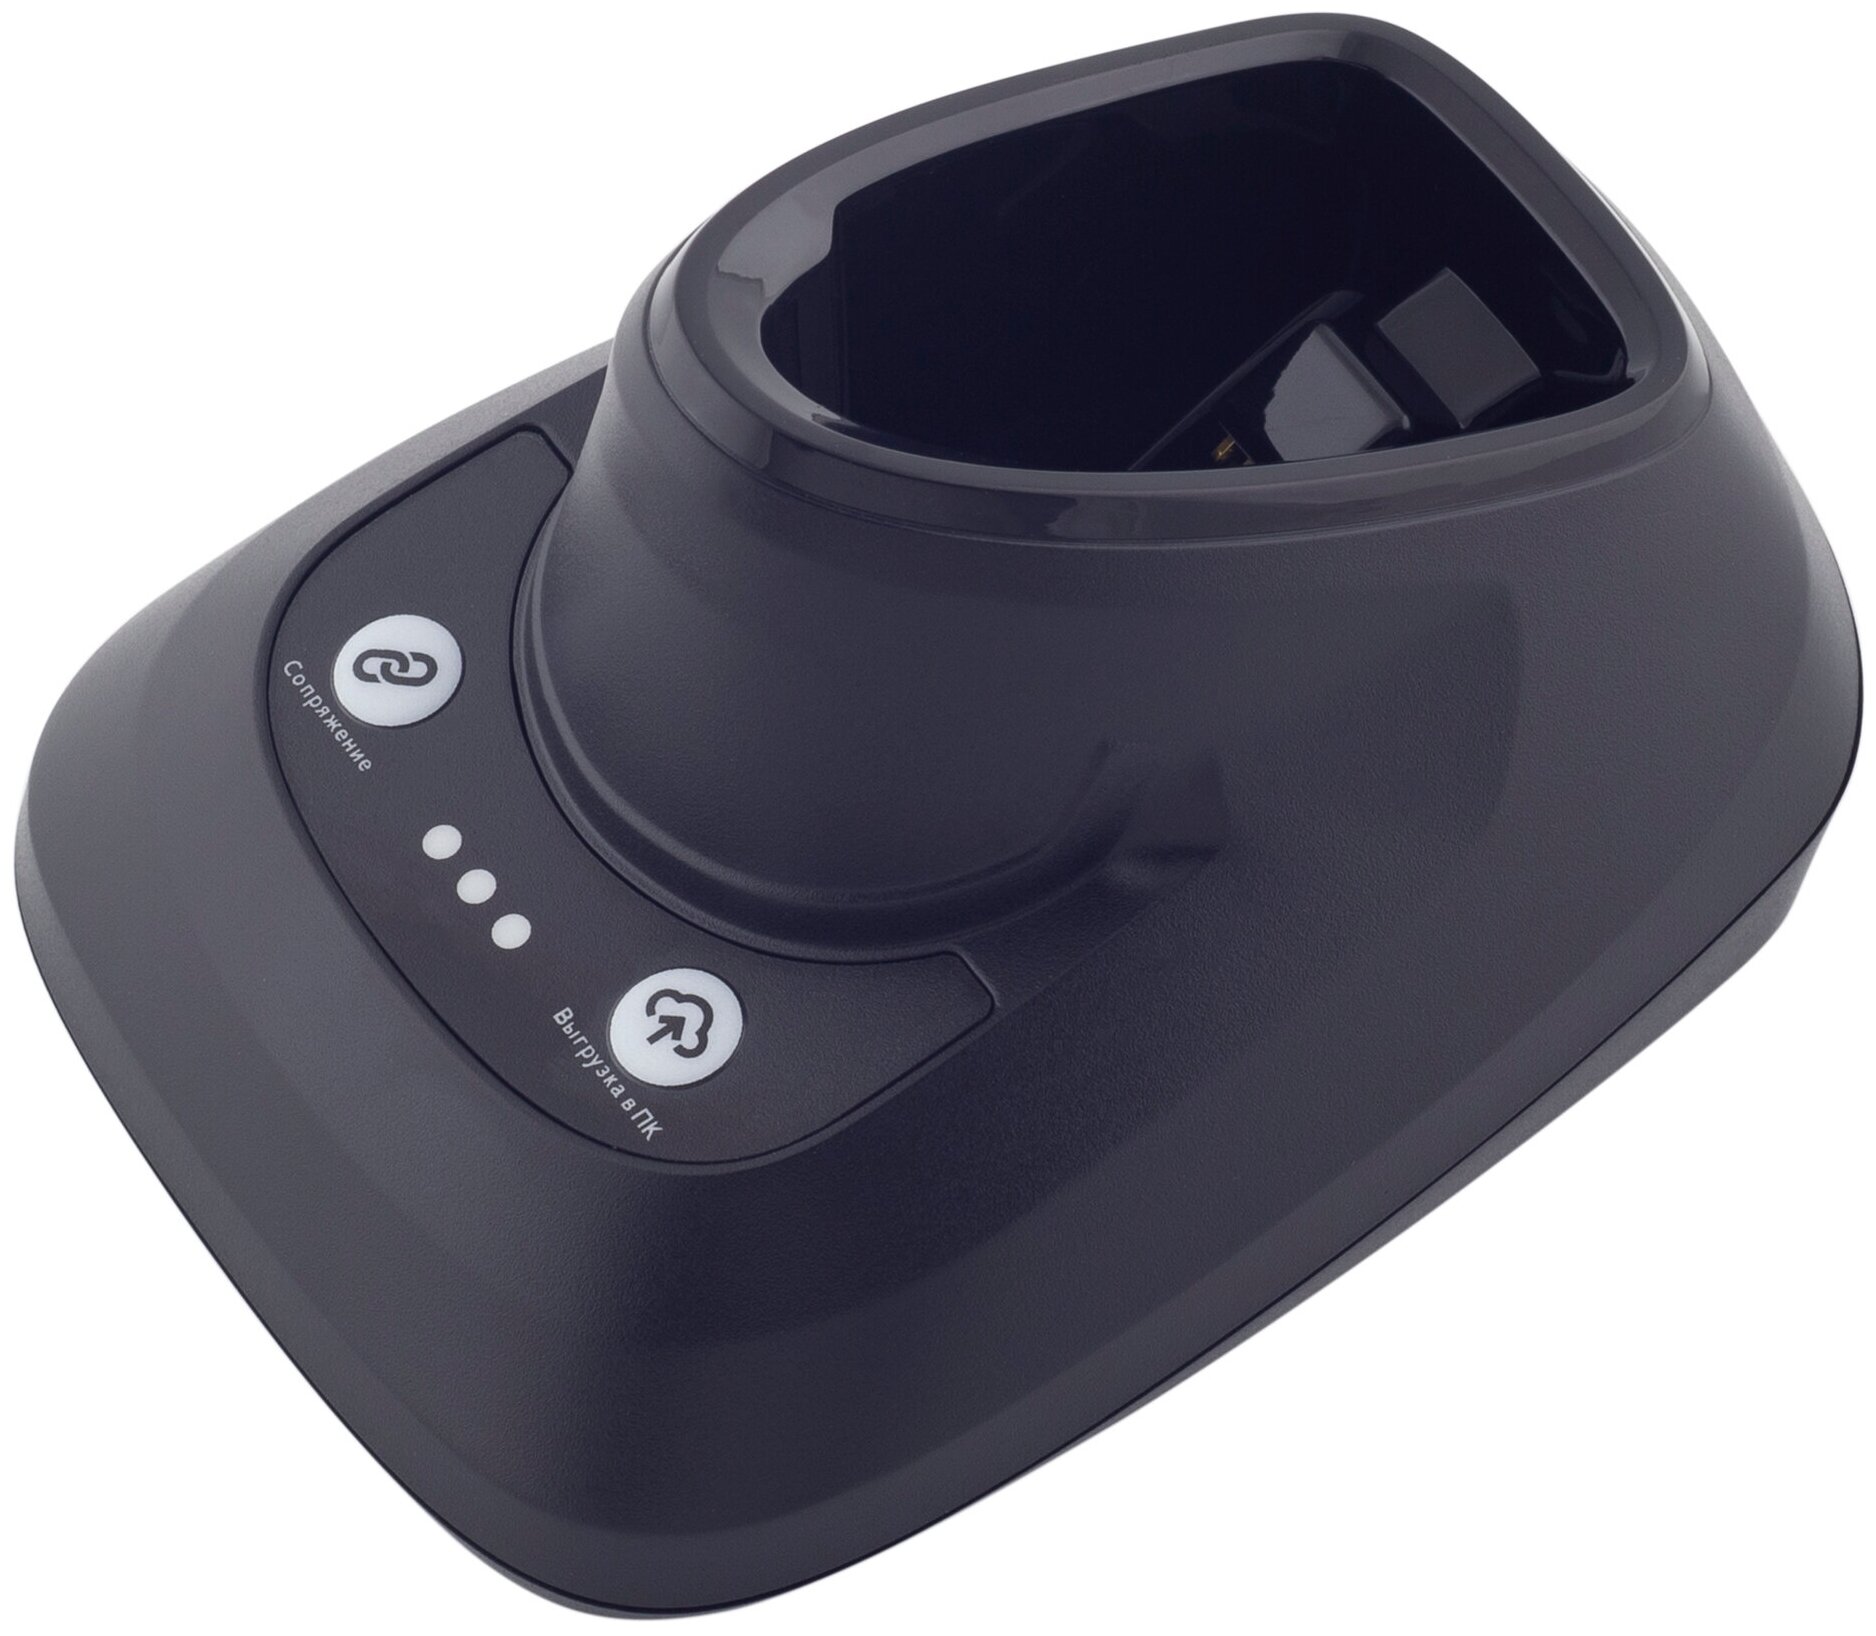 Зарядно-коммуникационная подставка (Cradle) для сканера МойPOS MSC-3208WEC2D v.2, арт. 4539, черная